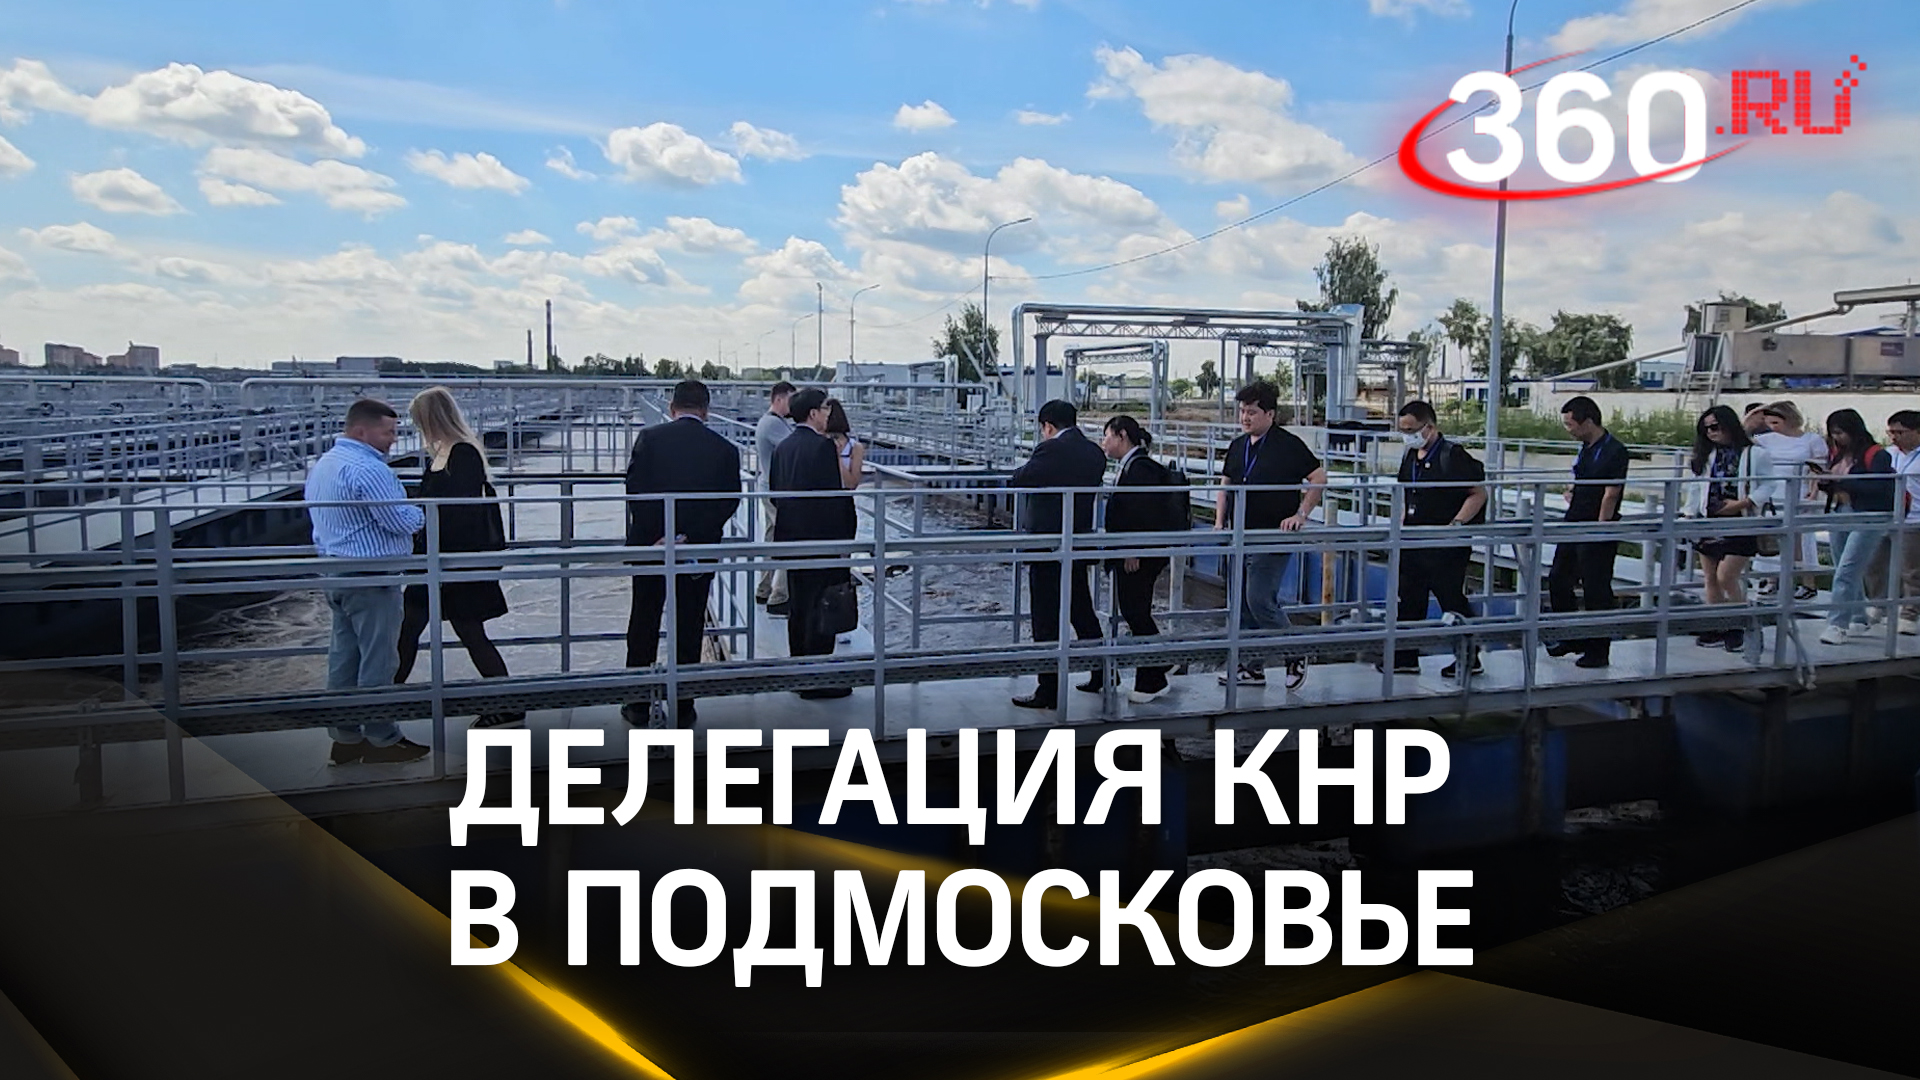 Русско-китайский опыт в борьбе за экологию: делегация КНР посетила очистную станцию в Подмосковье